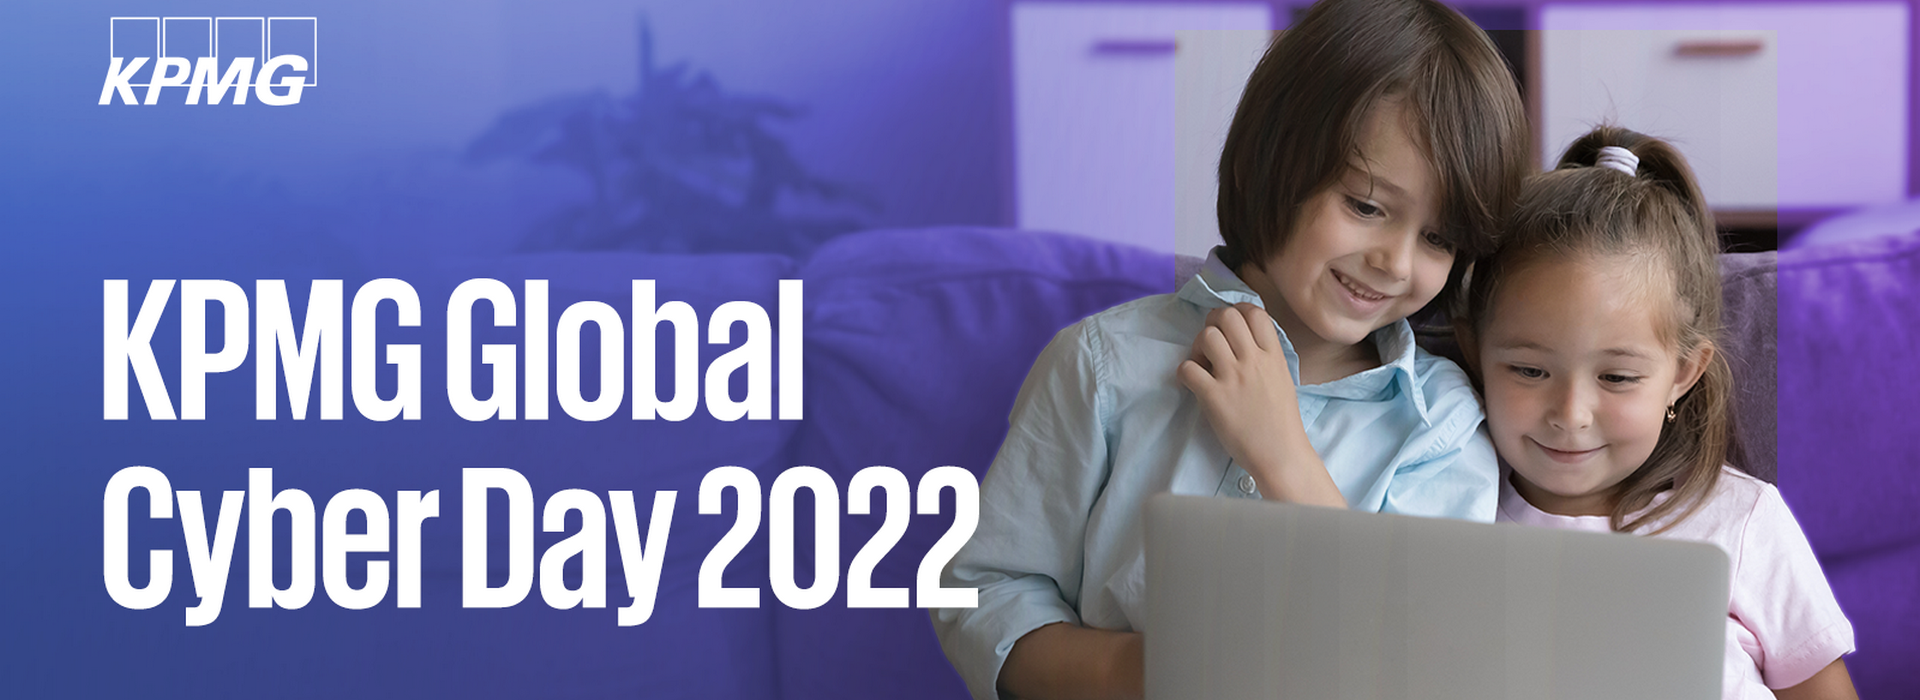 KPMG Global Cyber Day 2022: консультанти з кібербезпеки проведуть у жовтні навчальні сесії для учнів молодших та старших класів